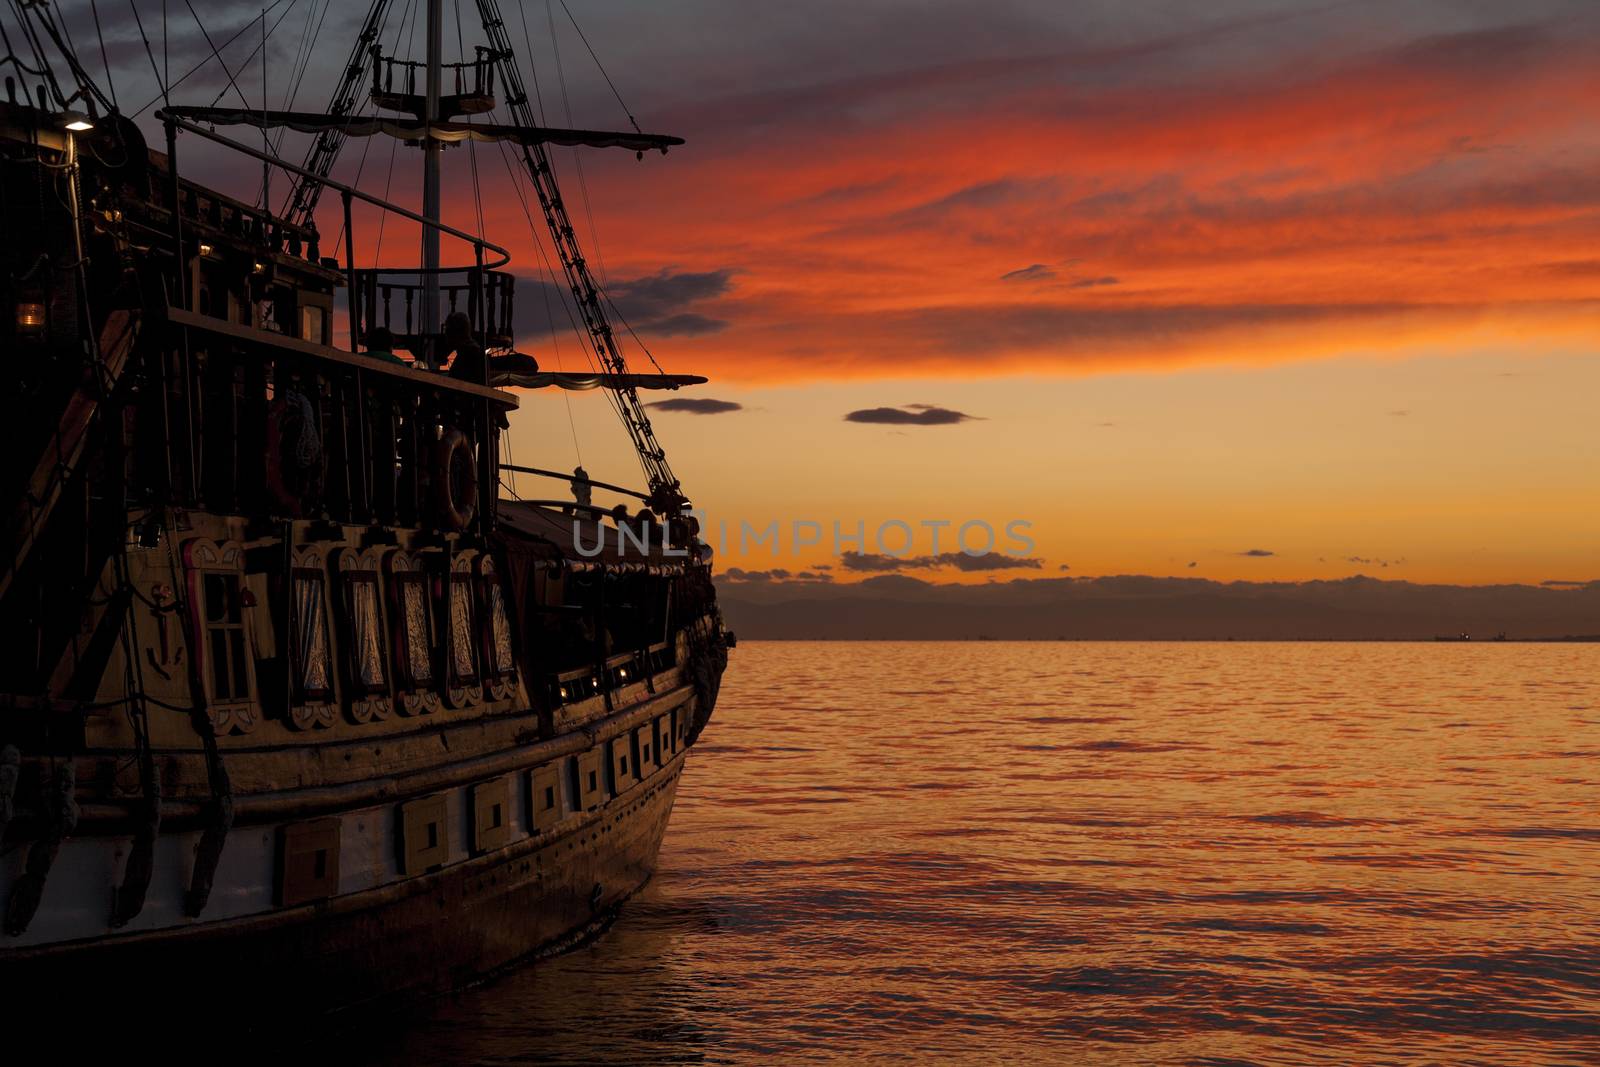 Pirate Ship by Portokalis